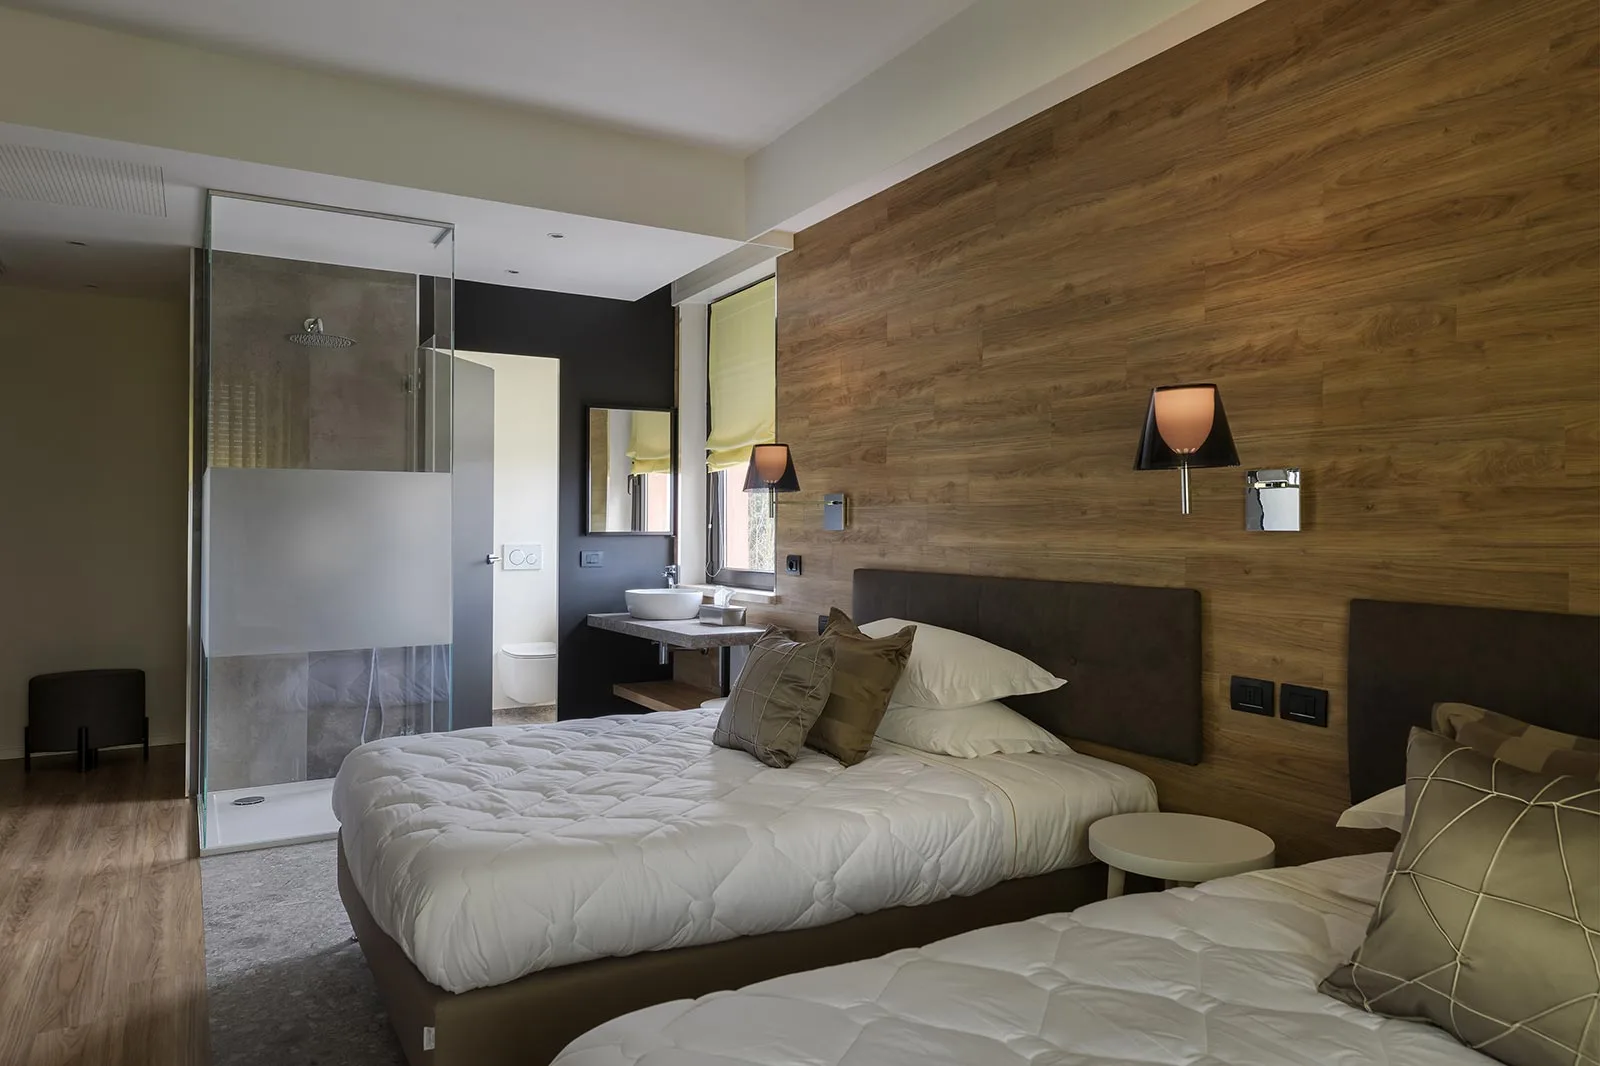 arredamento hotel focus testata letto rivestimento legno